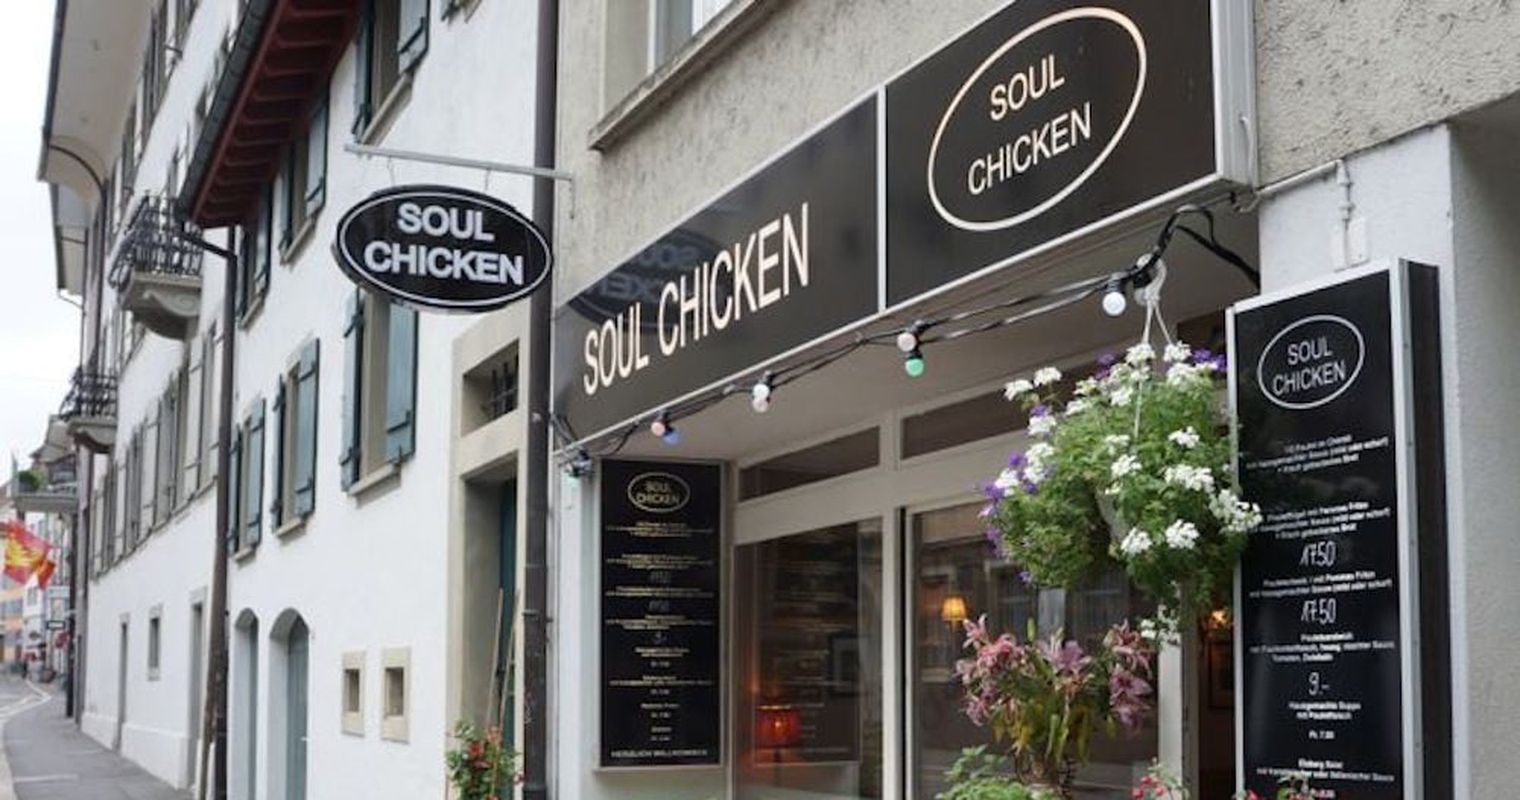 Soul Chicken – Da kräht der Hahn